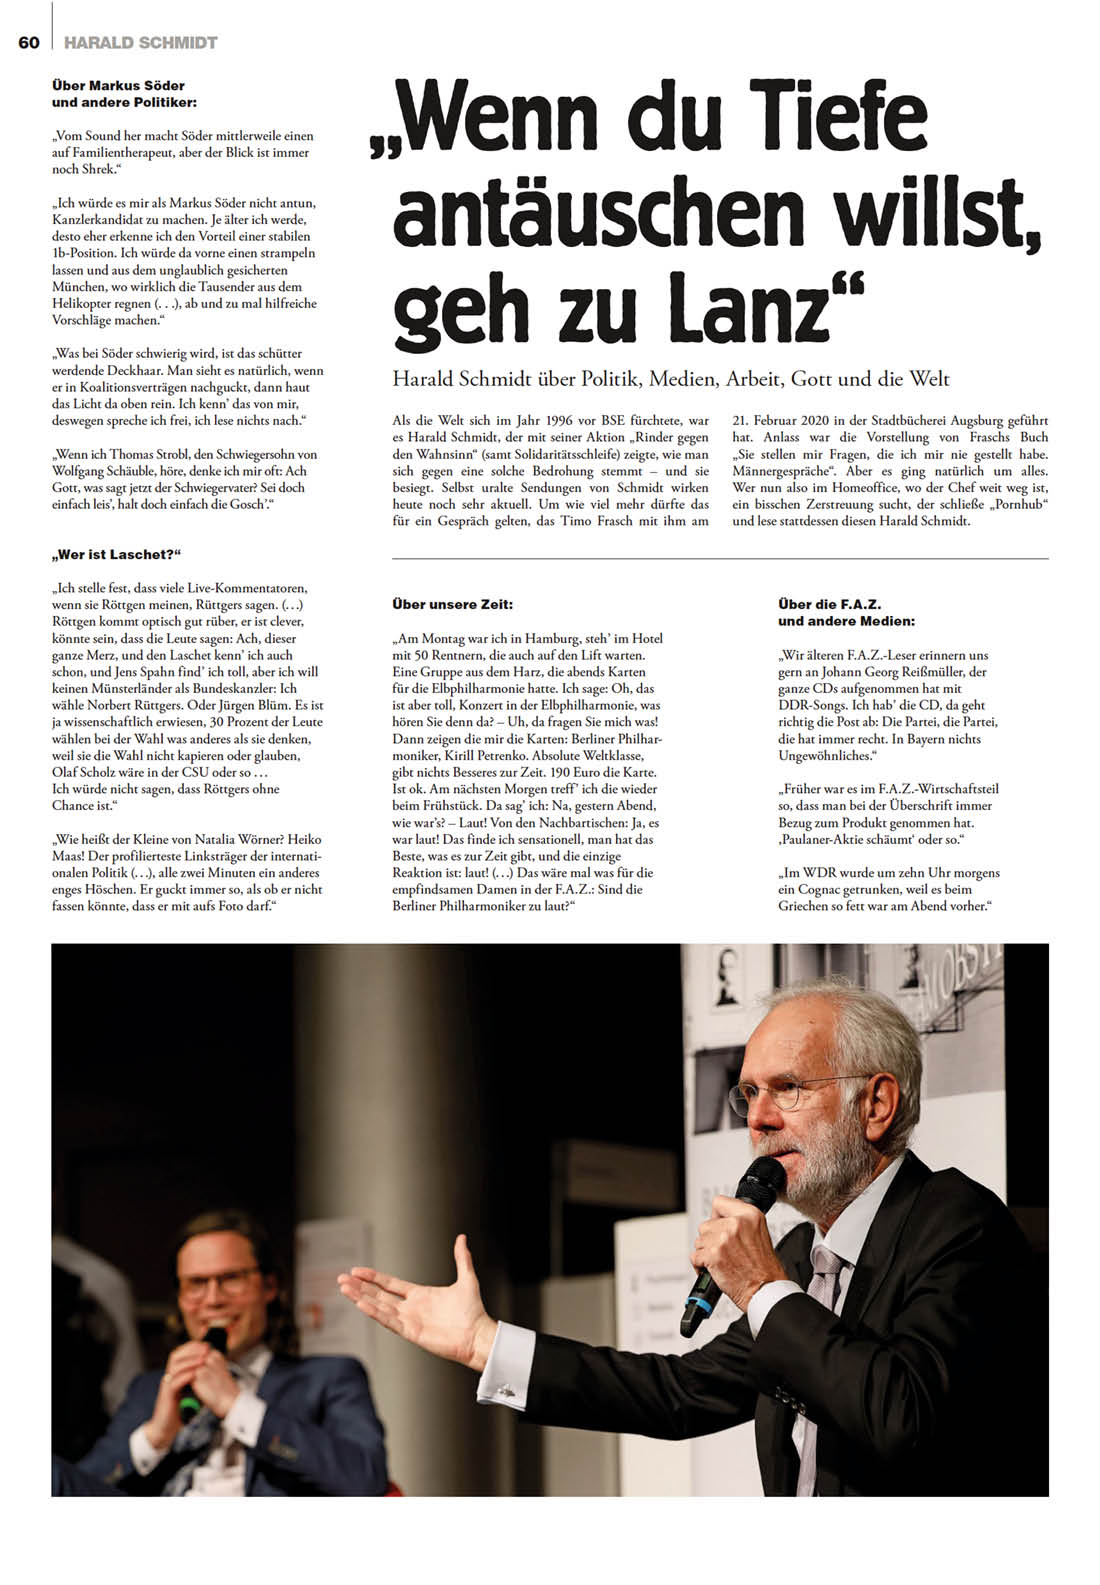 Harald Schmidt für die Frankfurter Allgemeine Zeitung